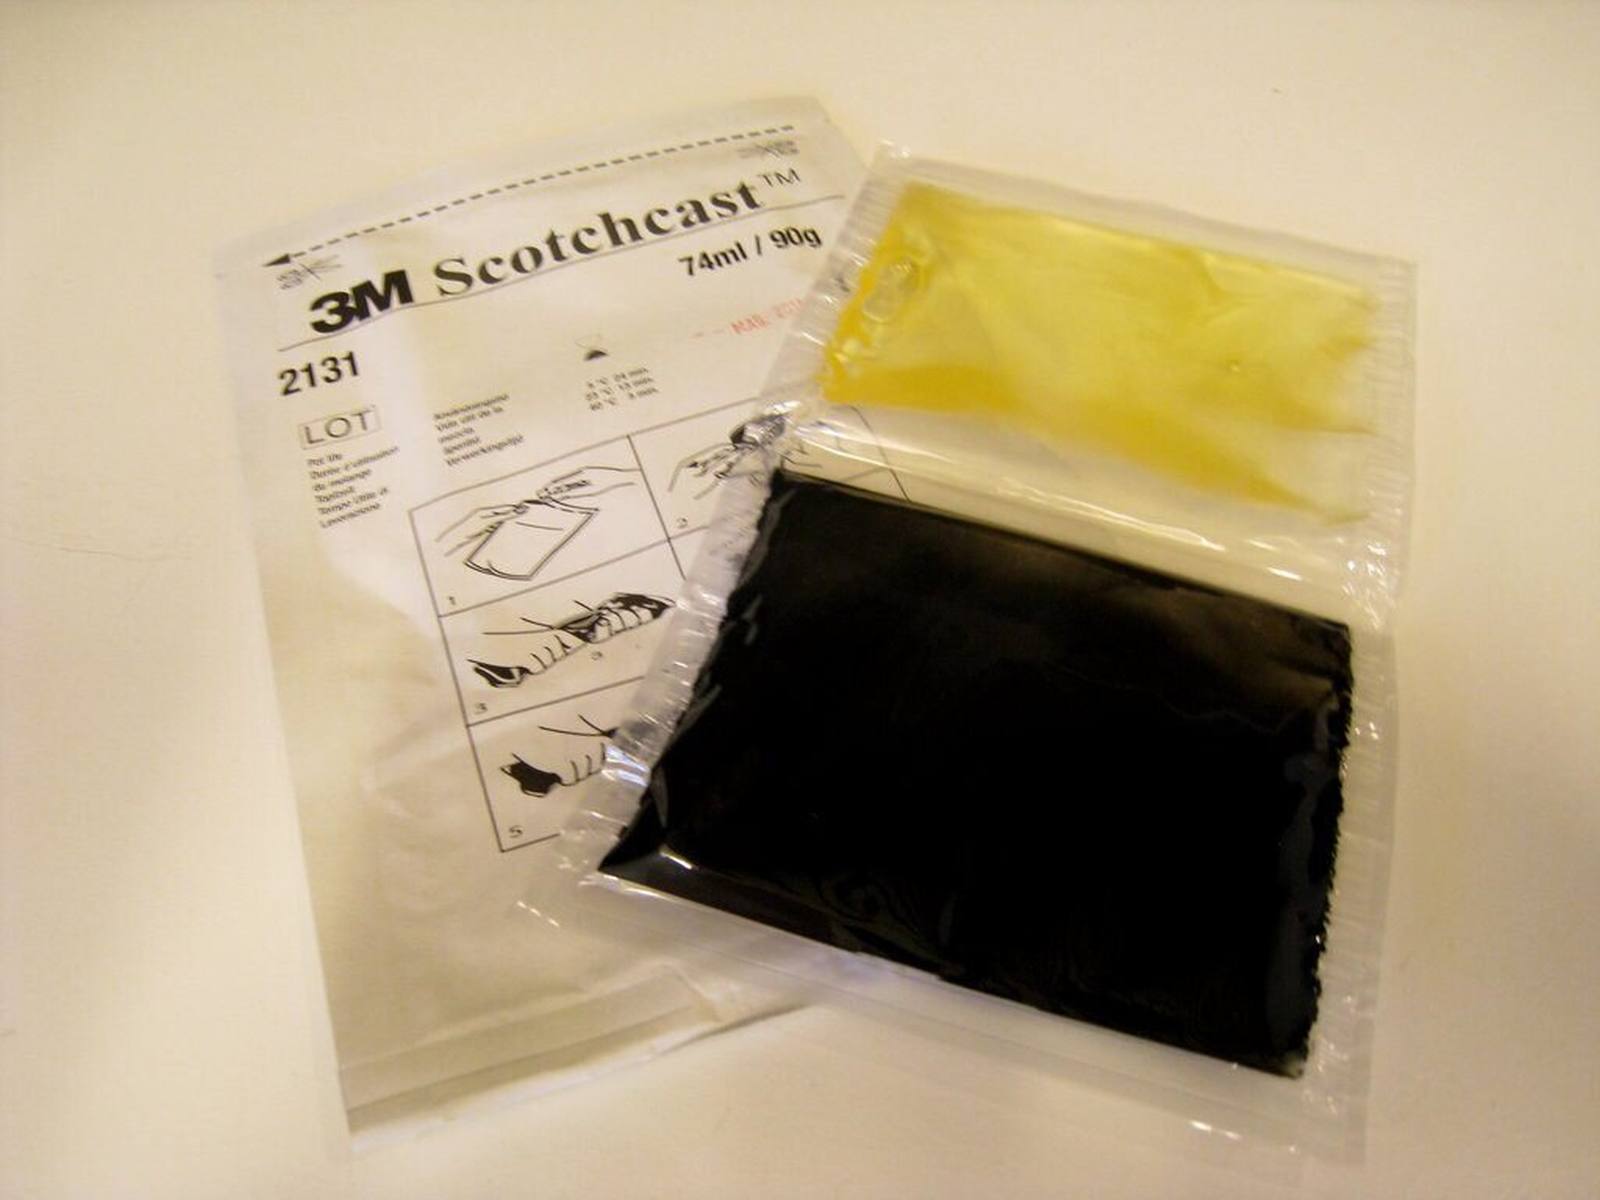  3M Scotchcast 2131-B, polyuretaanikaapelihartsi, 2-komponenttinen GMG-järjestelmä, koko B, 173 ml